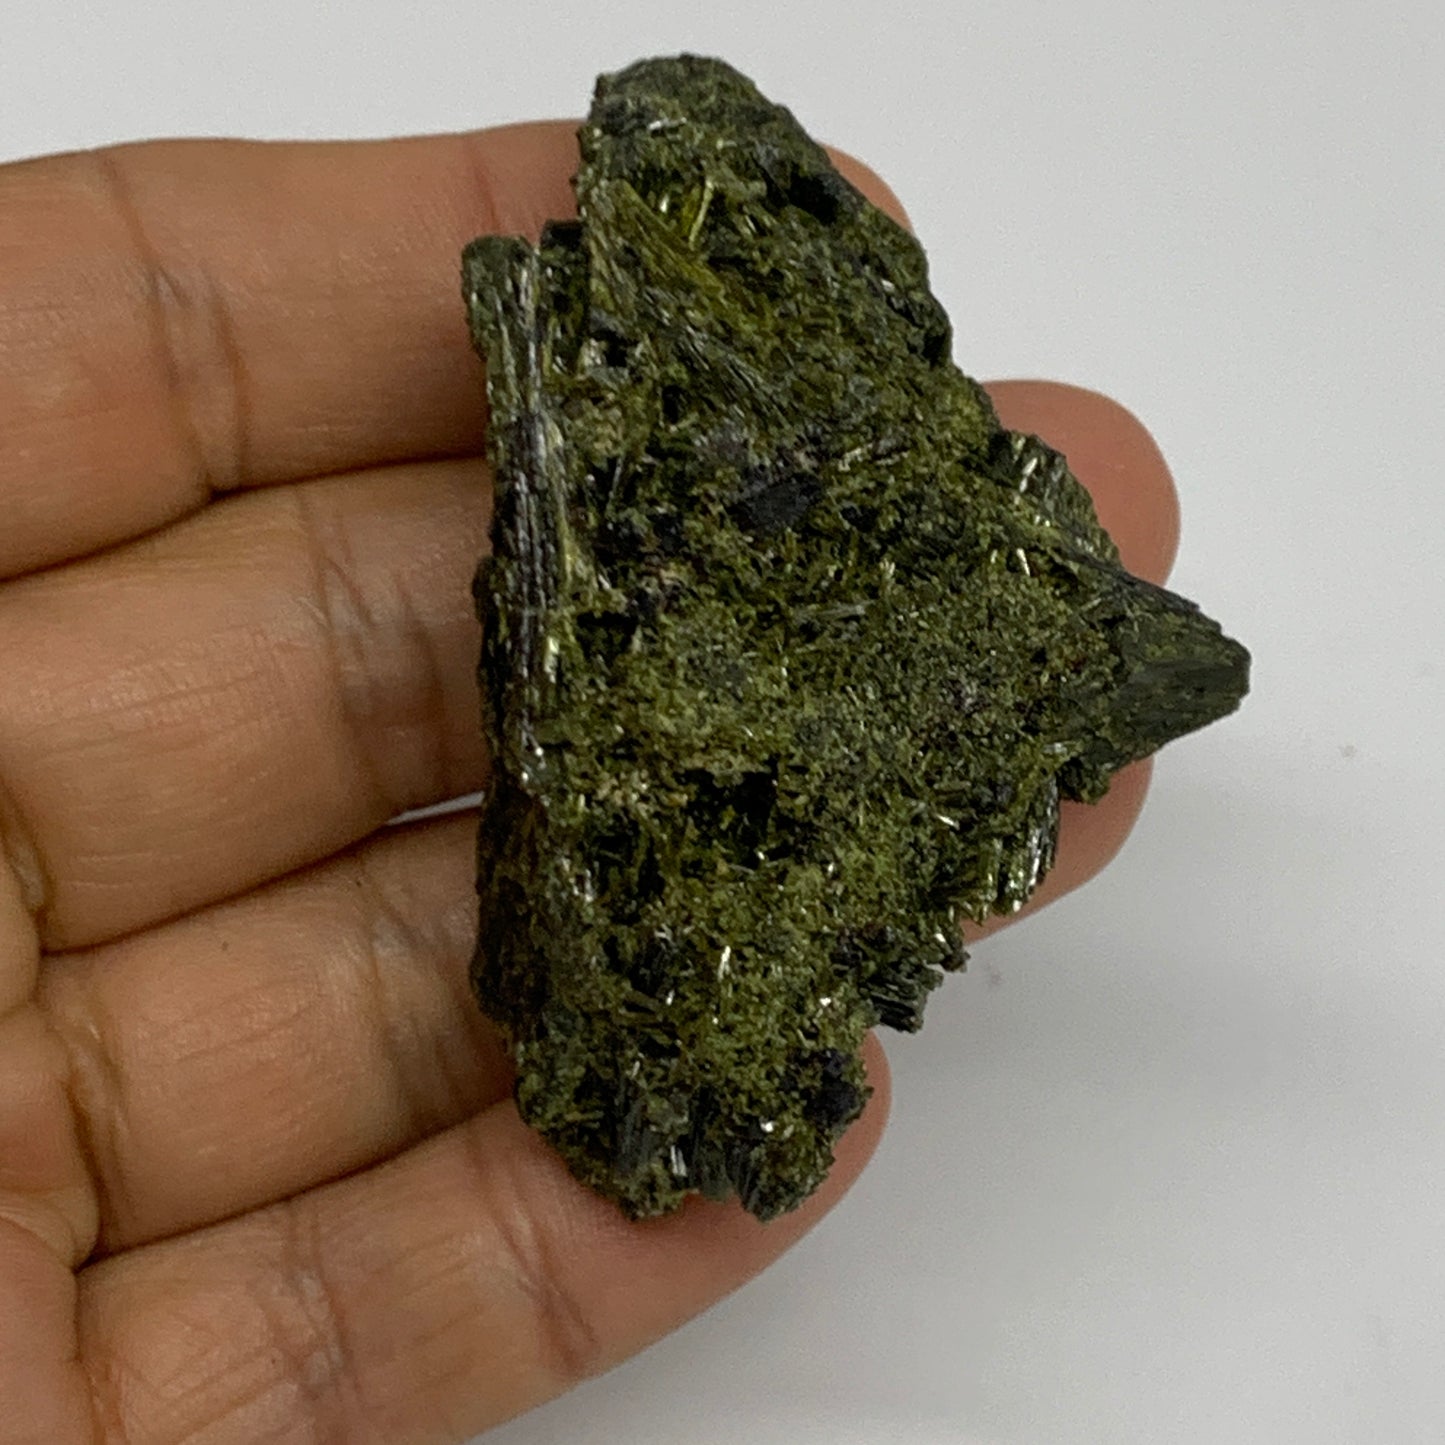 46g,2.3"x1.5"x0.7",Green Epidote Custer/Leaf Mineral Specimen @Pakistan,B27597